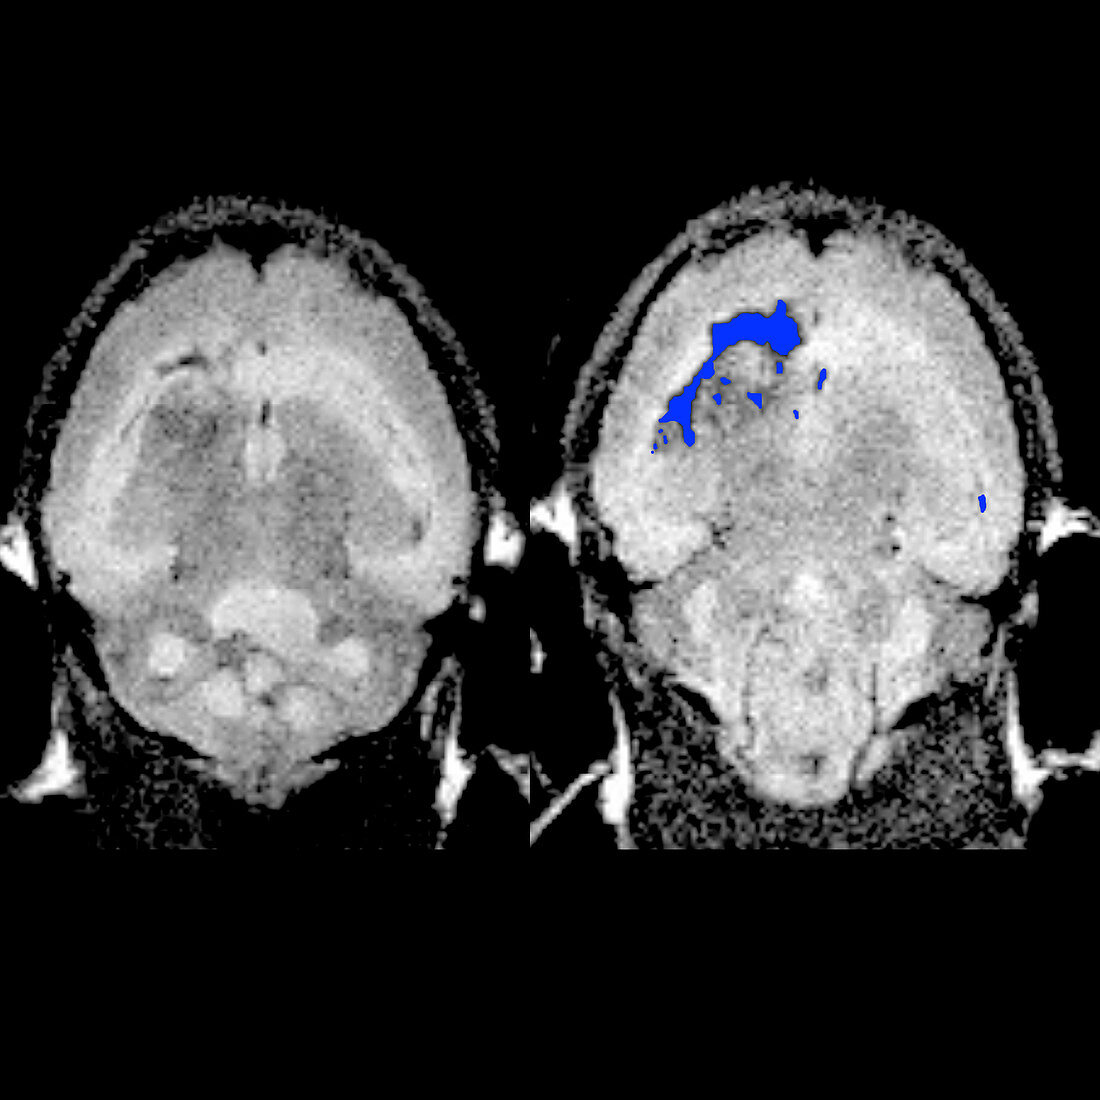 Targeted nanochains in brain cancer, MRI scans